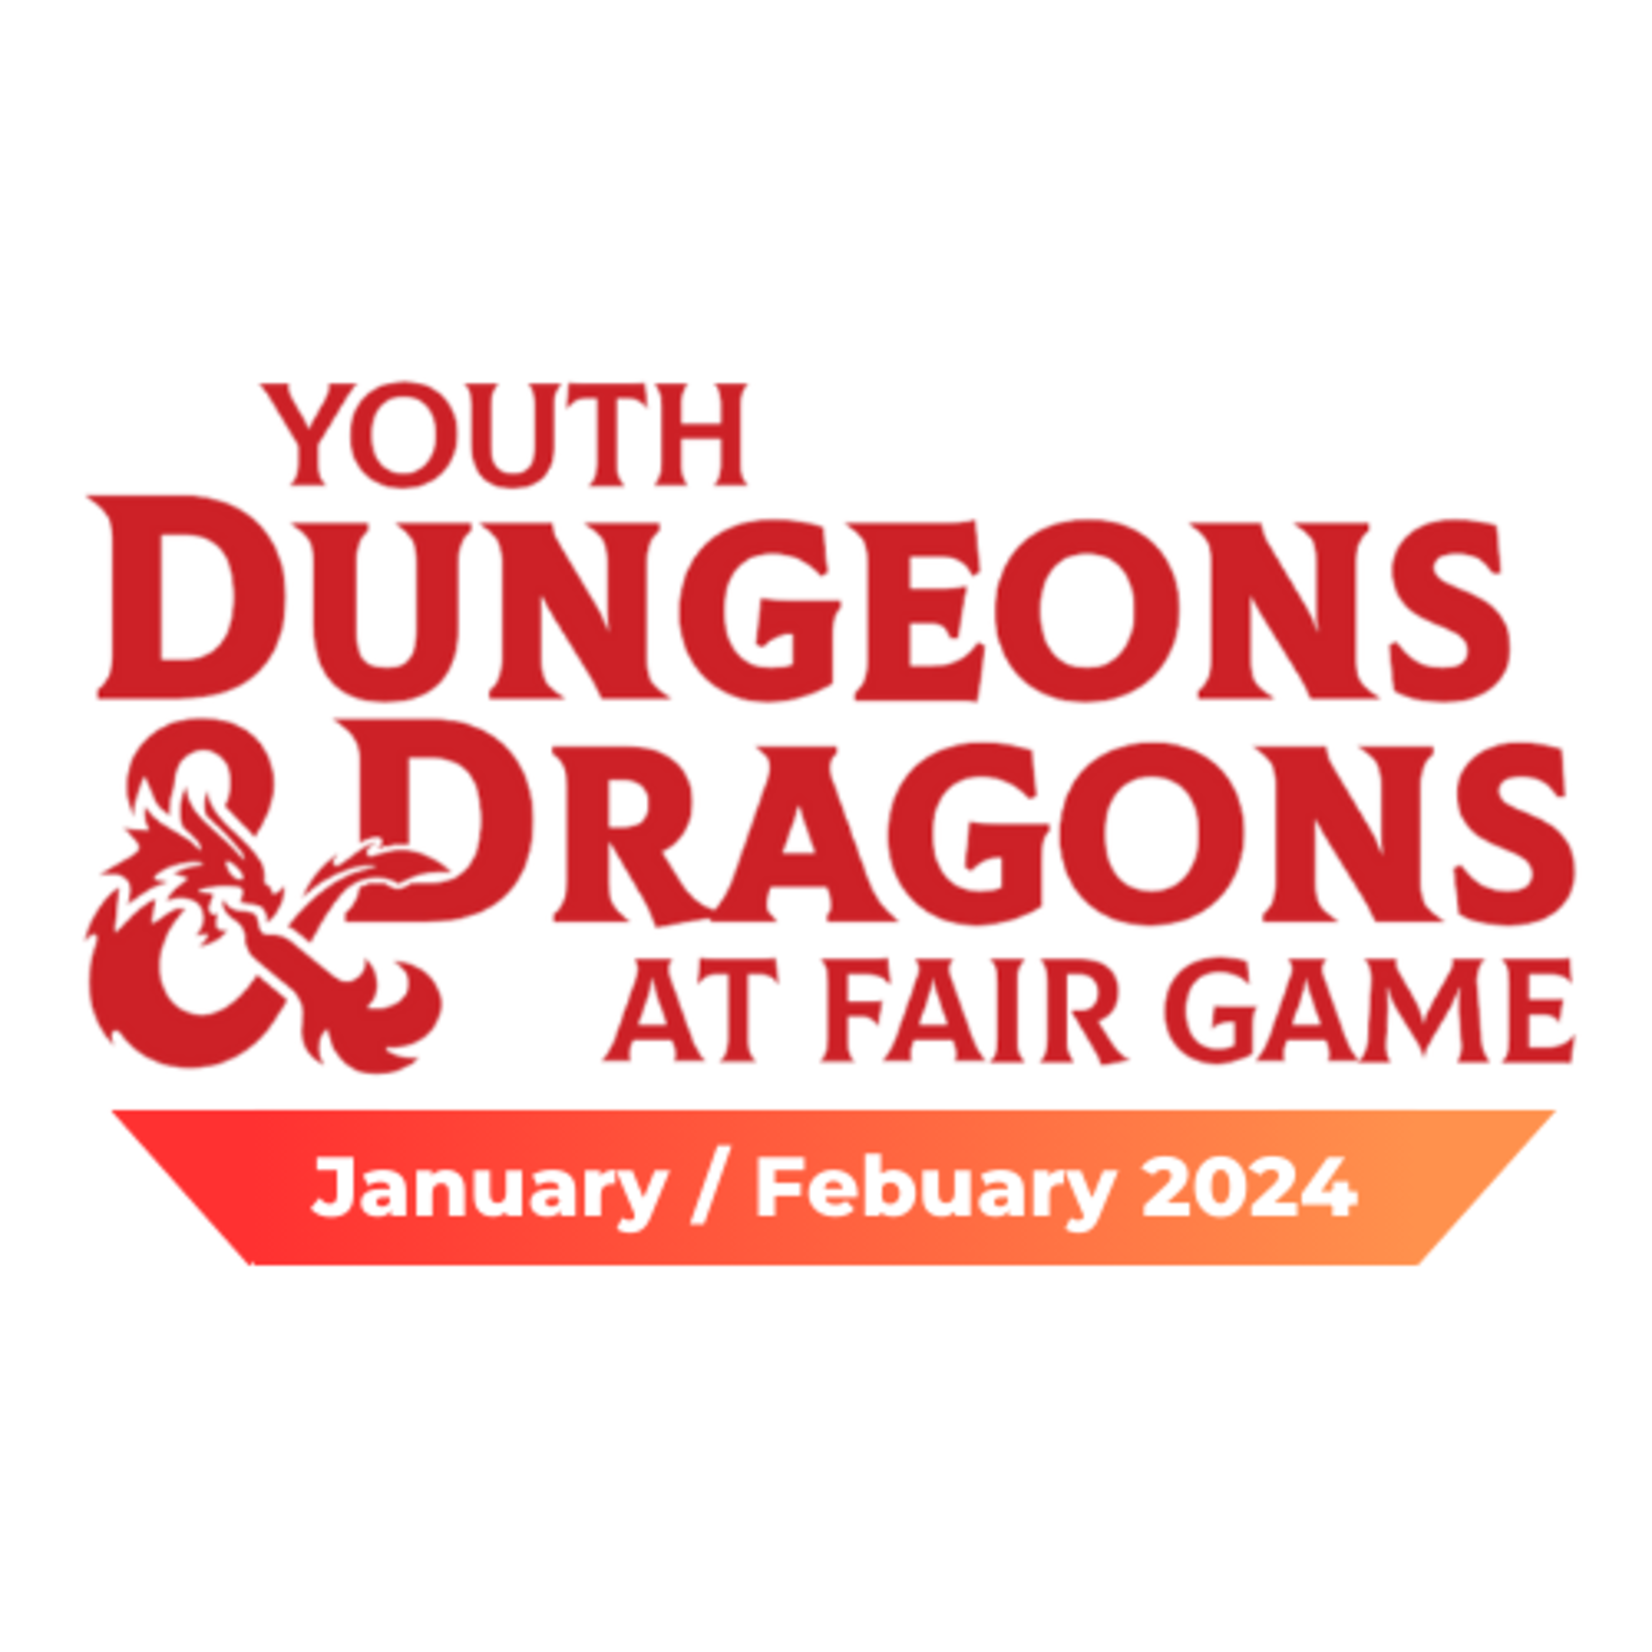 Fair Game YDND Jan/Feb 2024: Thursday - Group LR1 La Grange 4-6 PM CST (Ages 8-13)